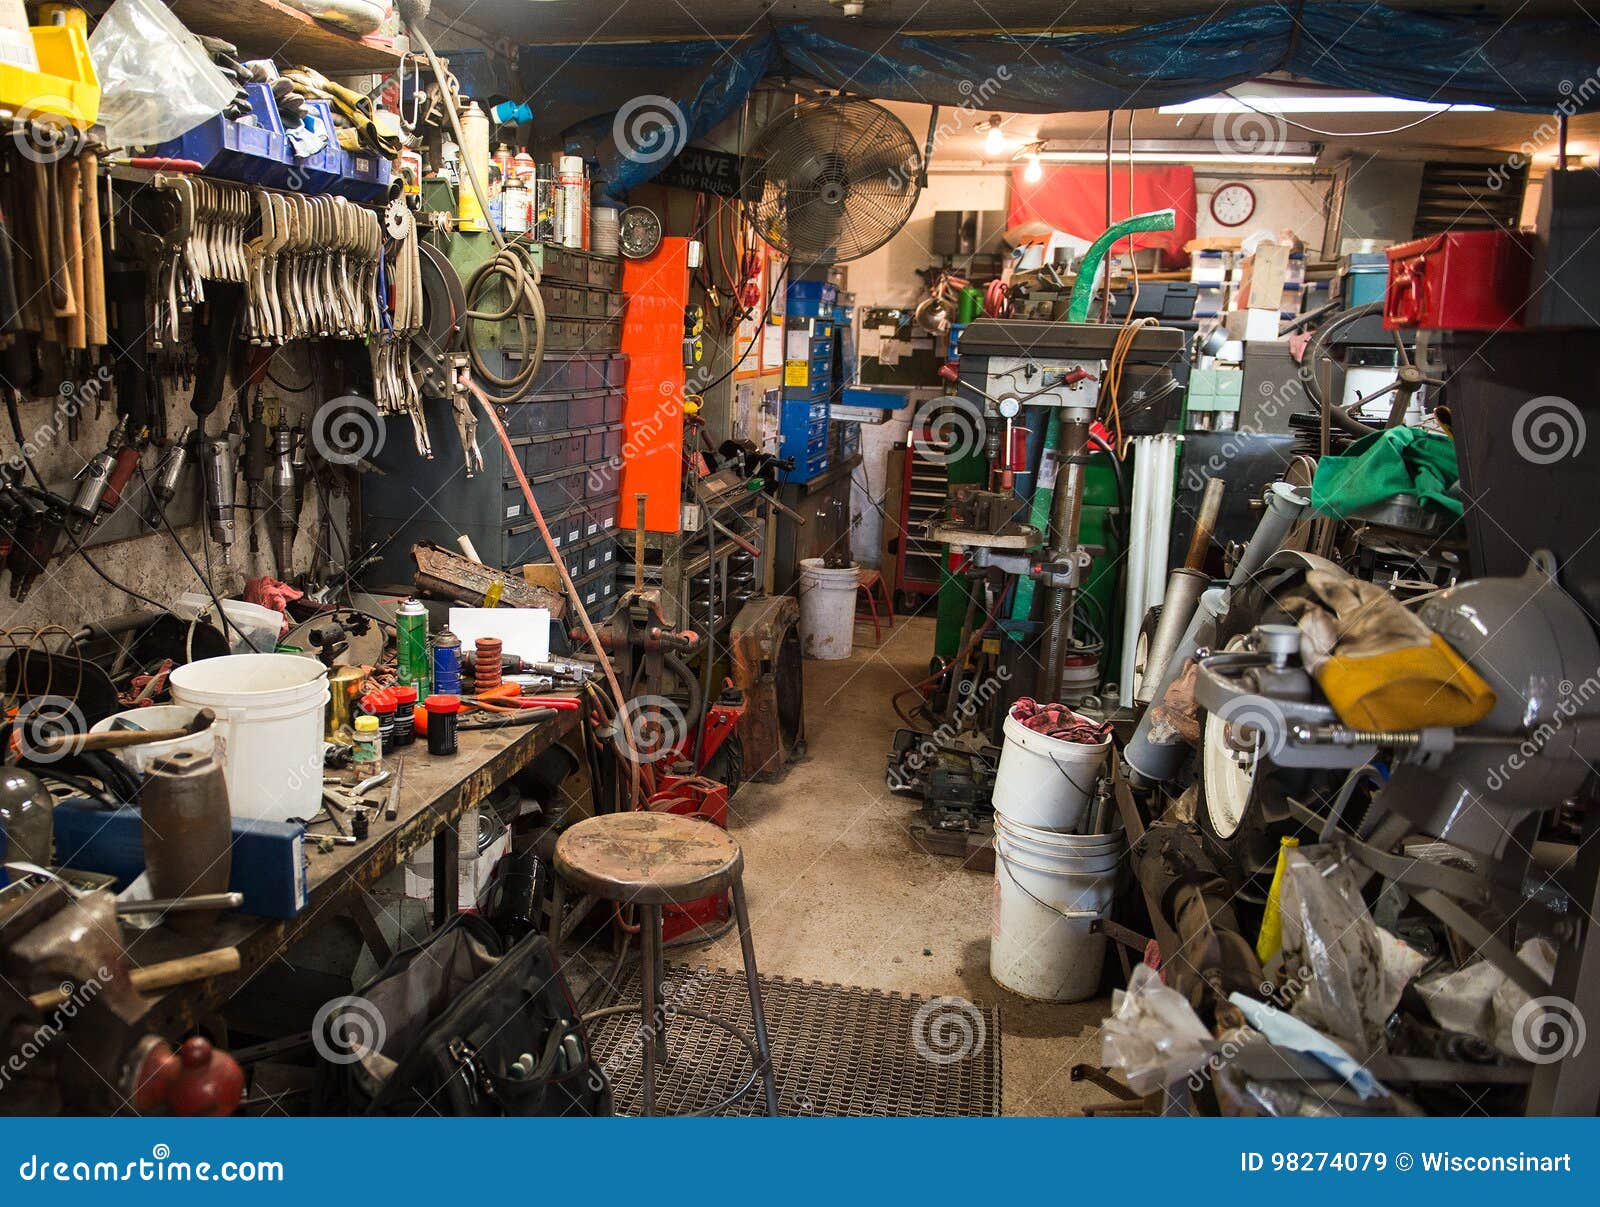 man cave, work shop, workshop